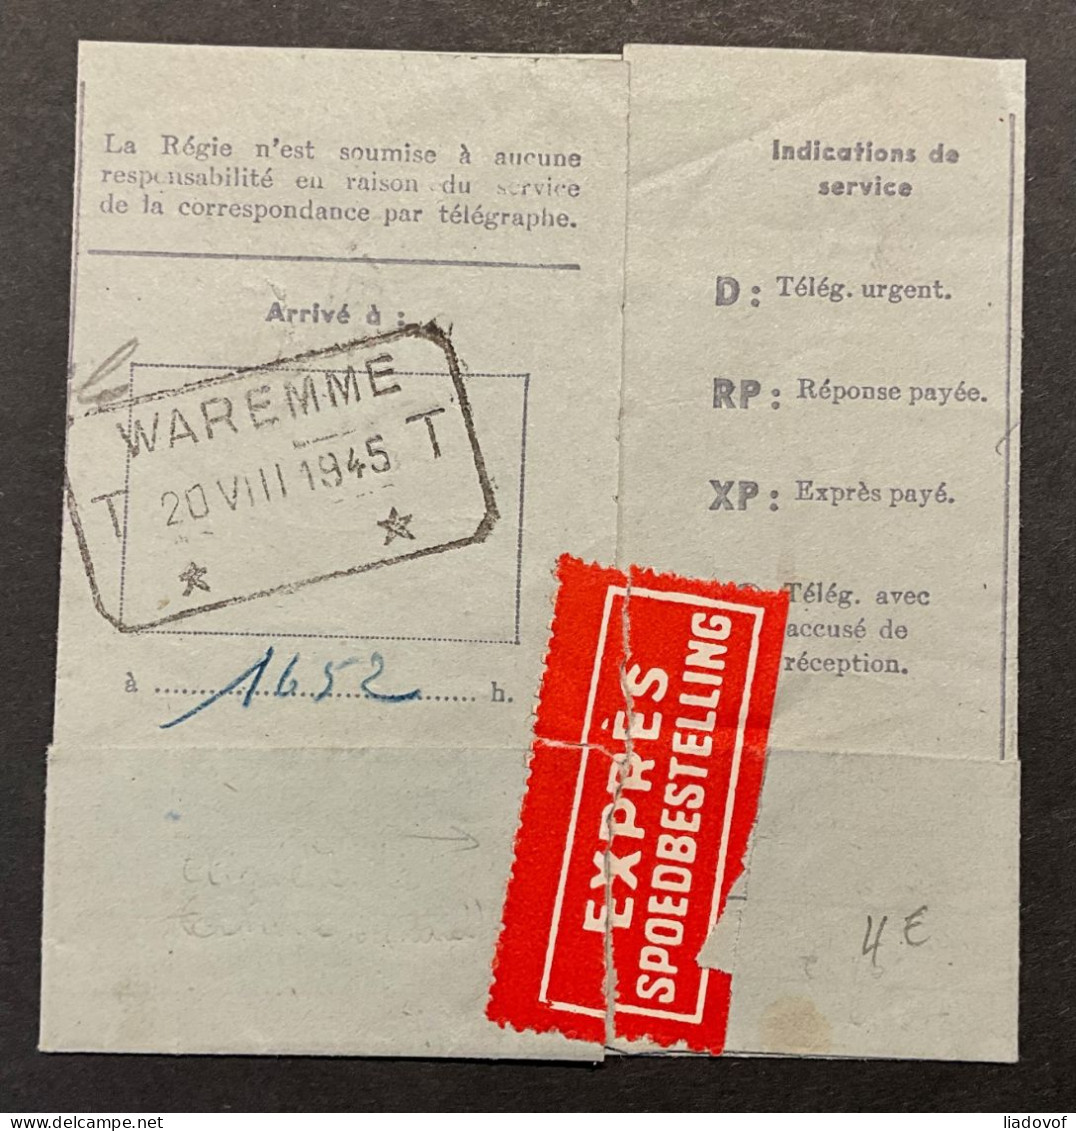 Télégramme / Telegram 20 VIII 1945 WAREMME - De La Téléphone - Copie Confirmative - Telegrammen